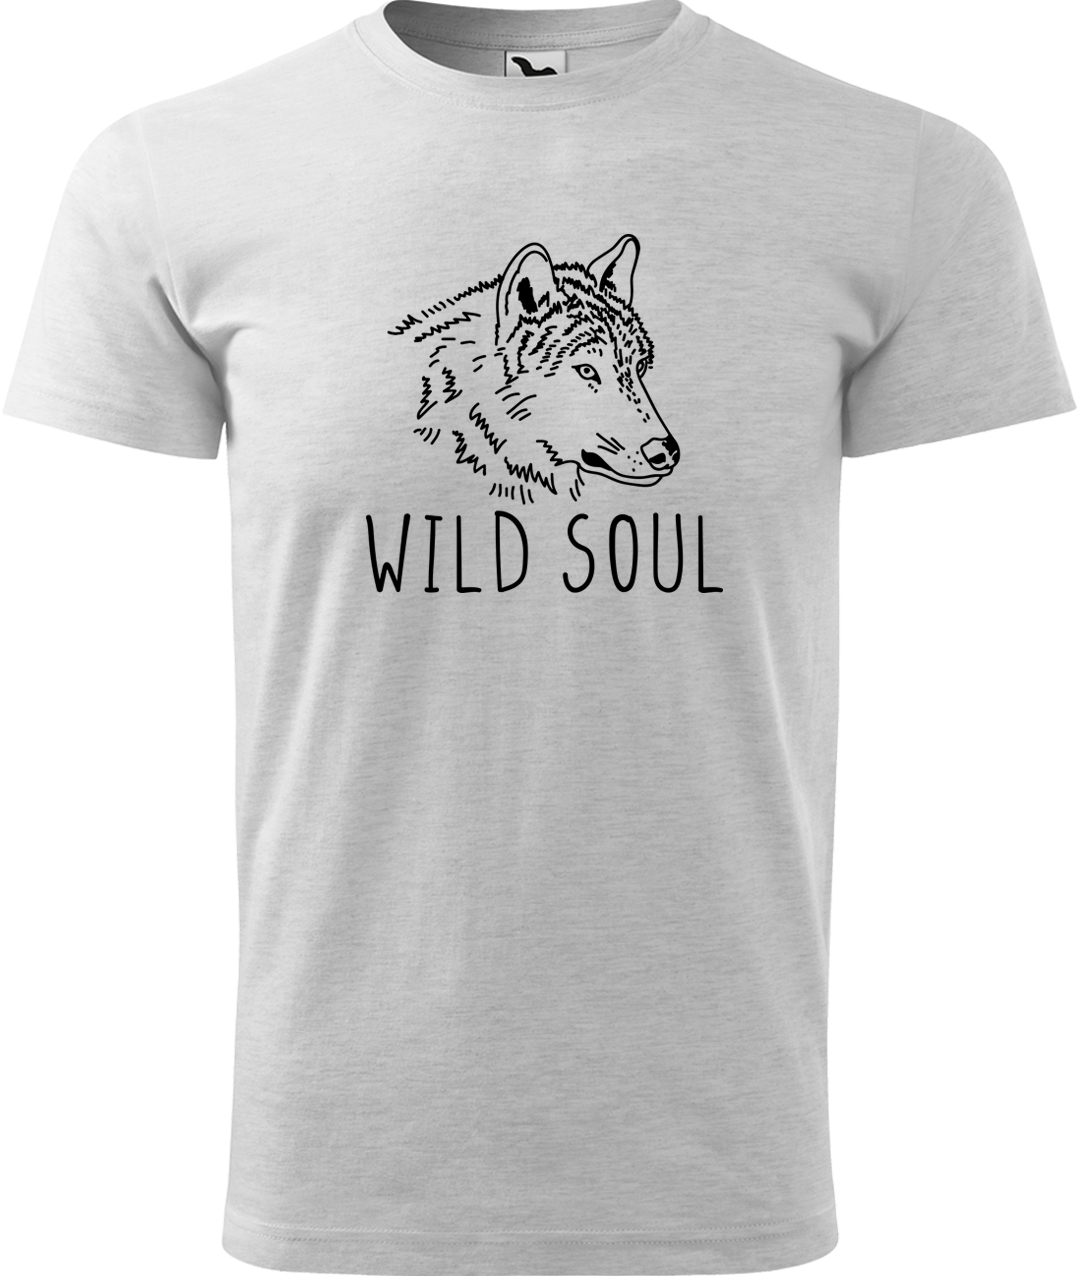 Pánské tričko s vlkem - Wild soul Velikost: 4XL, Barva: Světle šedý melír (03), Střih: pánský